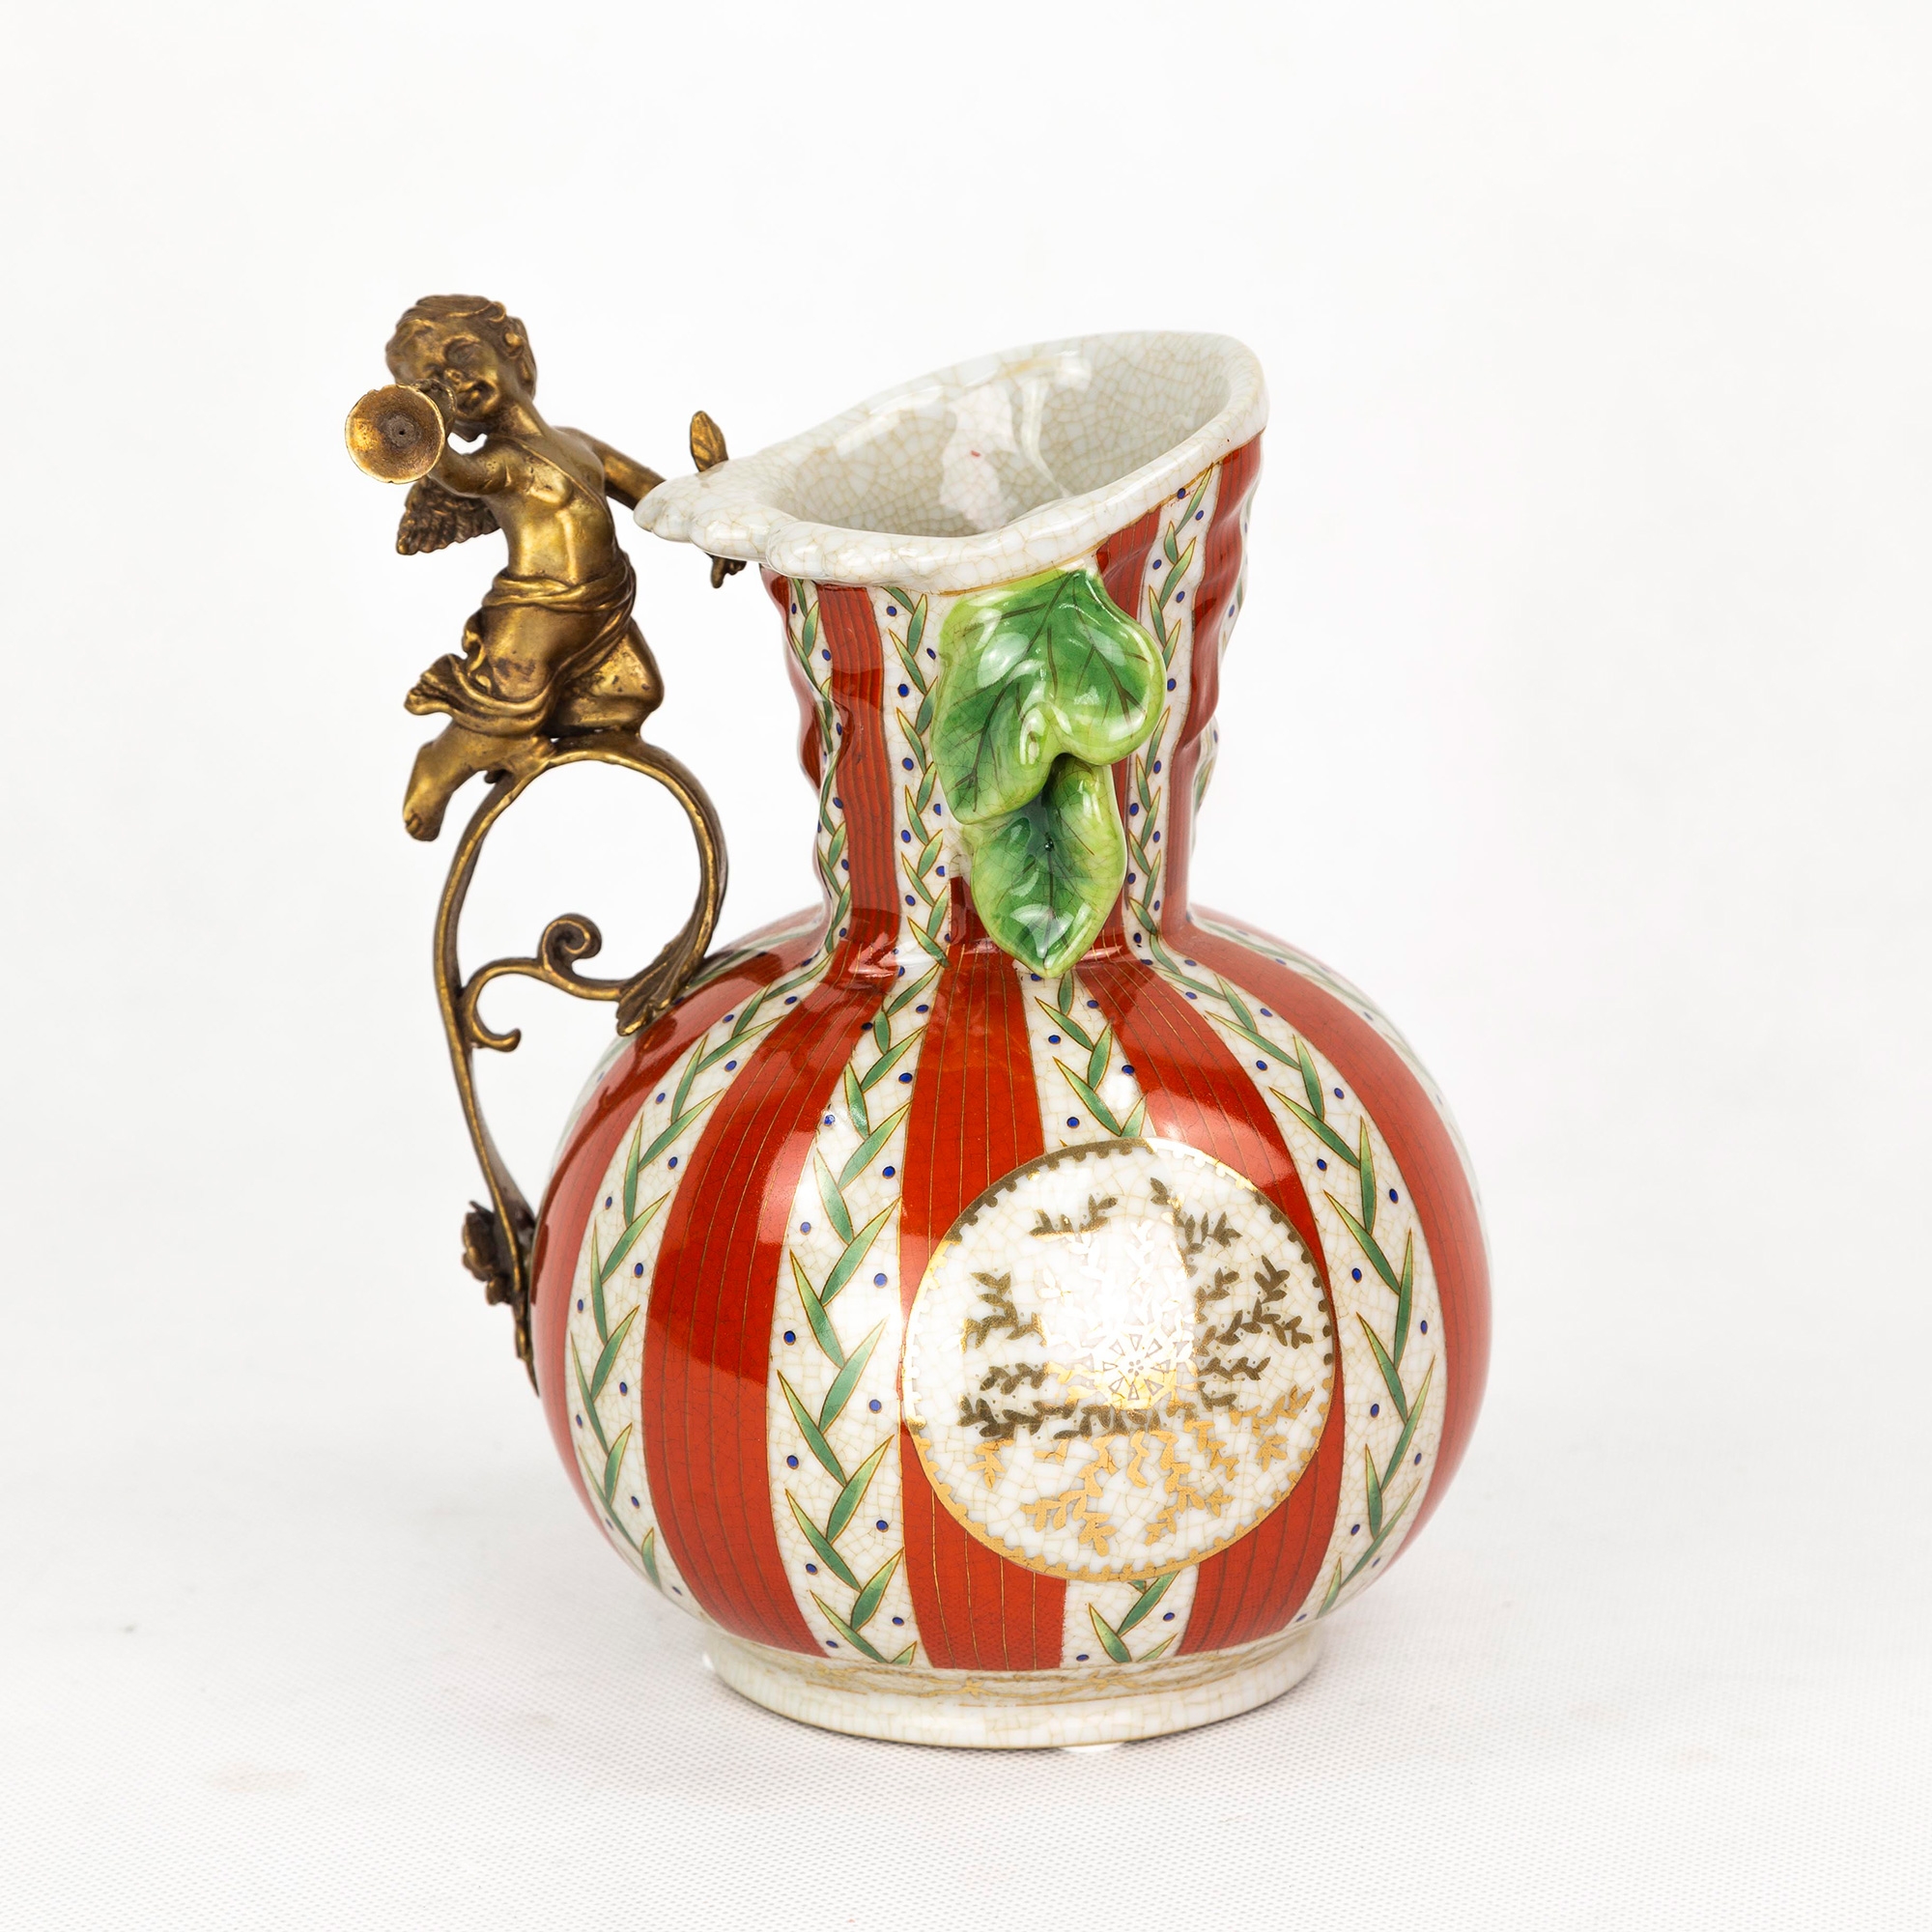 Ваза фарфоровая с ангелом 15х15х22 см Wah luen handicraft ваза для ов eurasia group фарфоровая зеленая 12 5x12 5x23 см